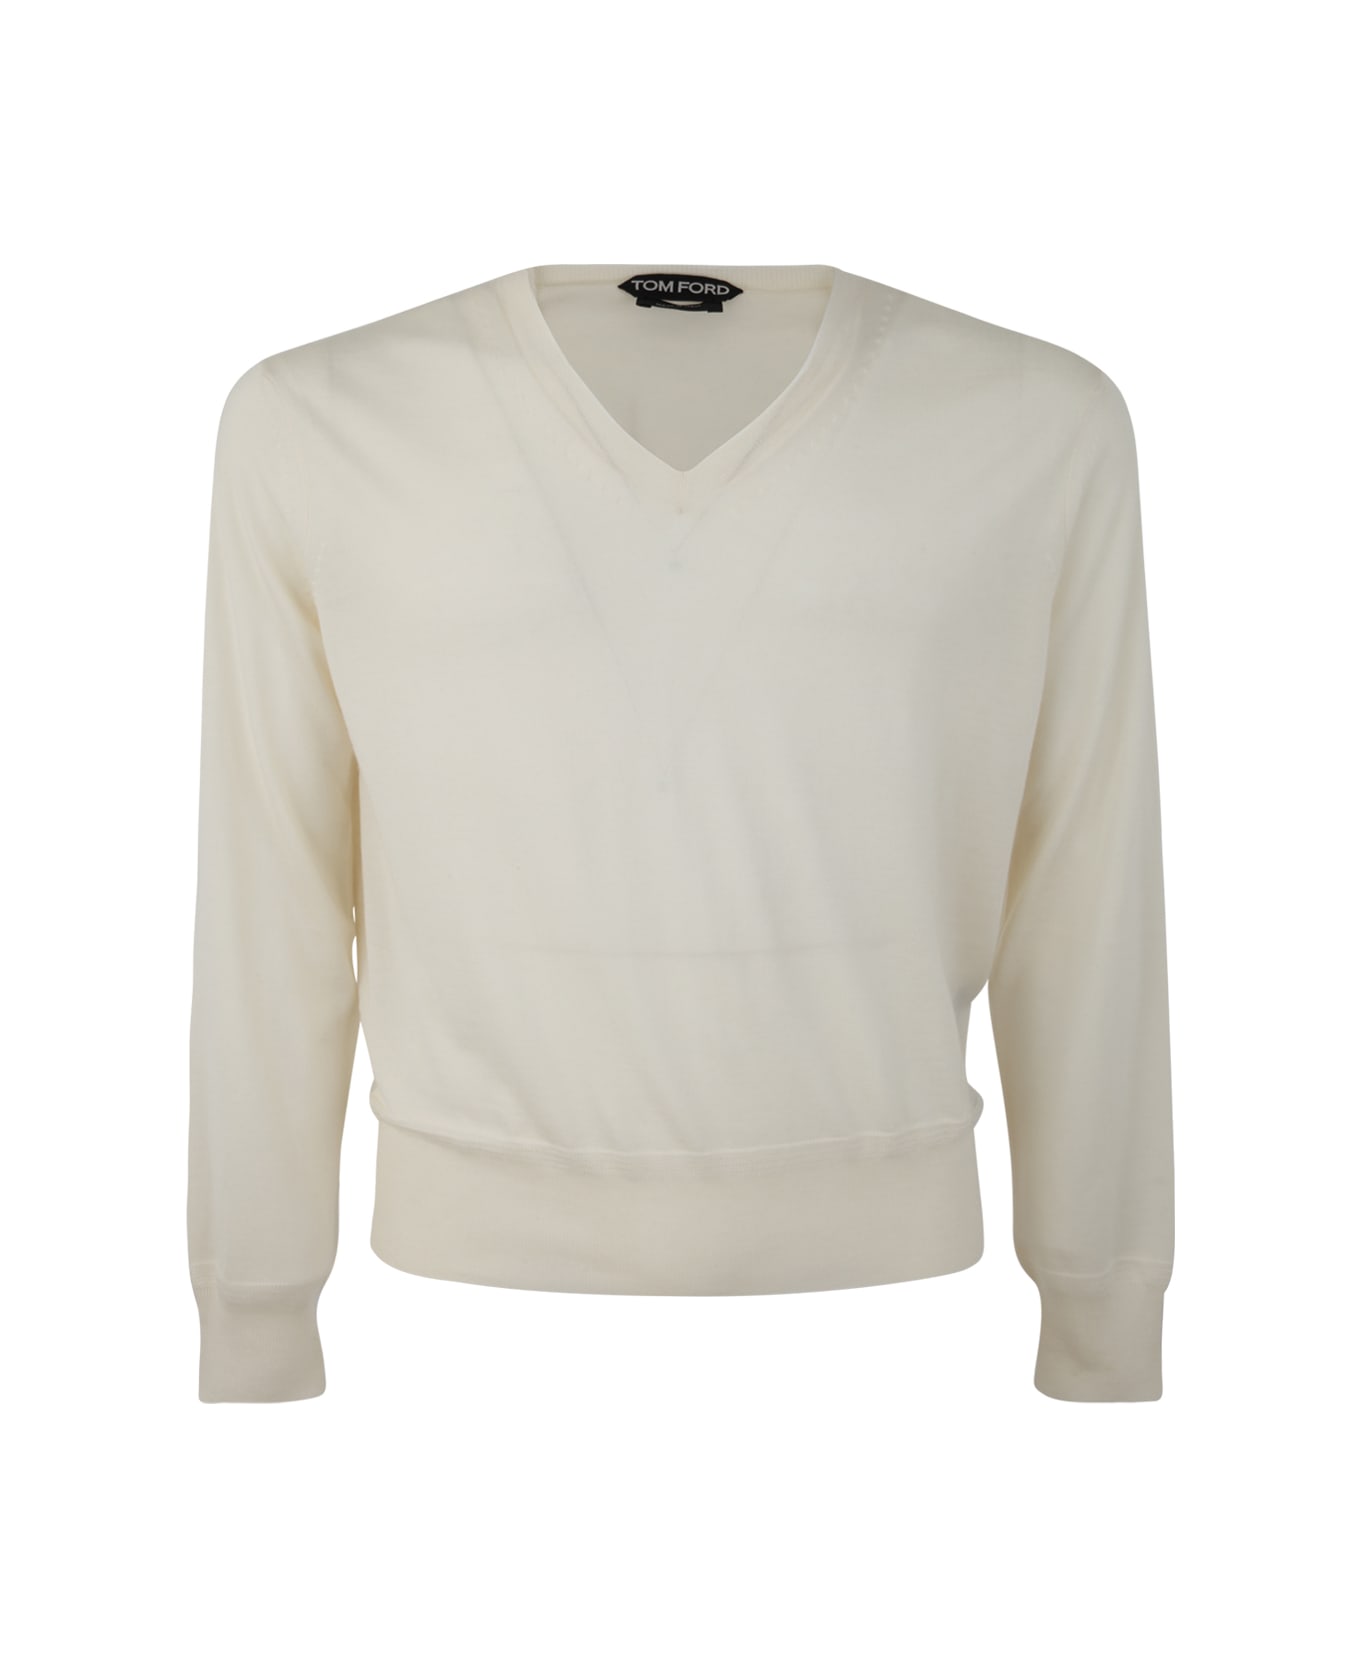 Tom Ford V Neck Sweater - Ivory